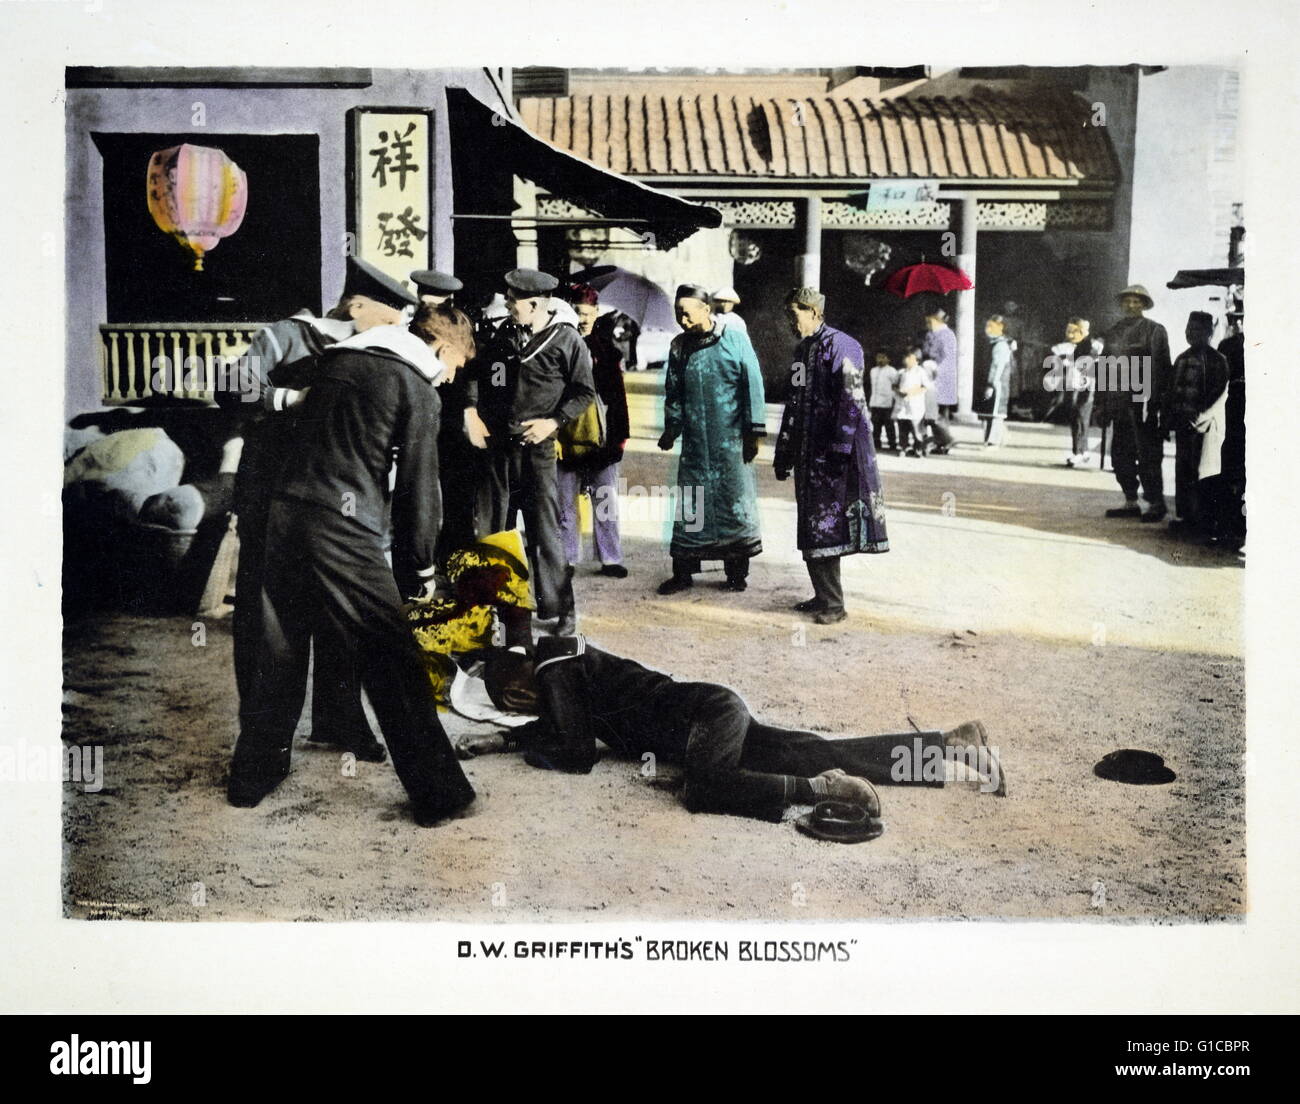 Motion picture hall carte pour 'Broken blossoms" montre les marins au-dessus de deux organismes, l'un et l'autre un Chinois un marin, couché sur la terre dans le quartier chinois de rue ; les résidents chinois et regarder. Datée 1919 Banque D'Images